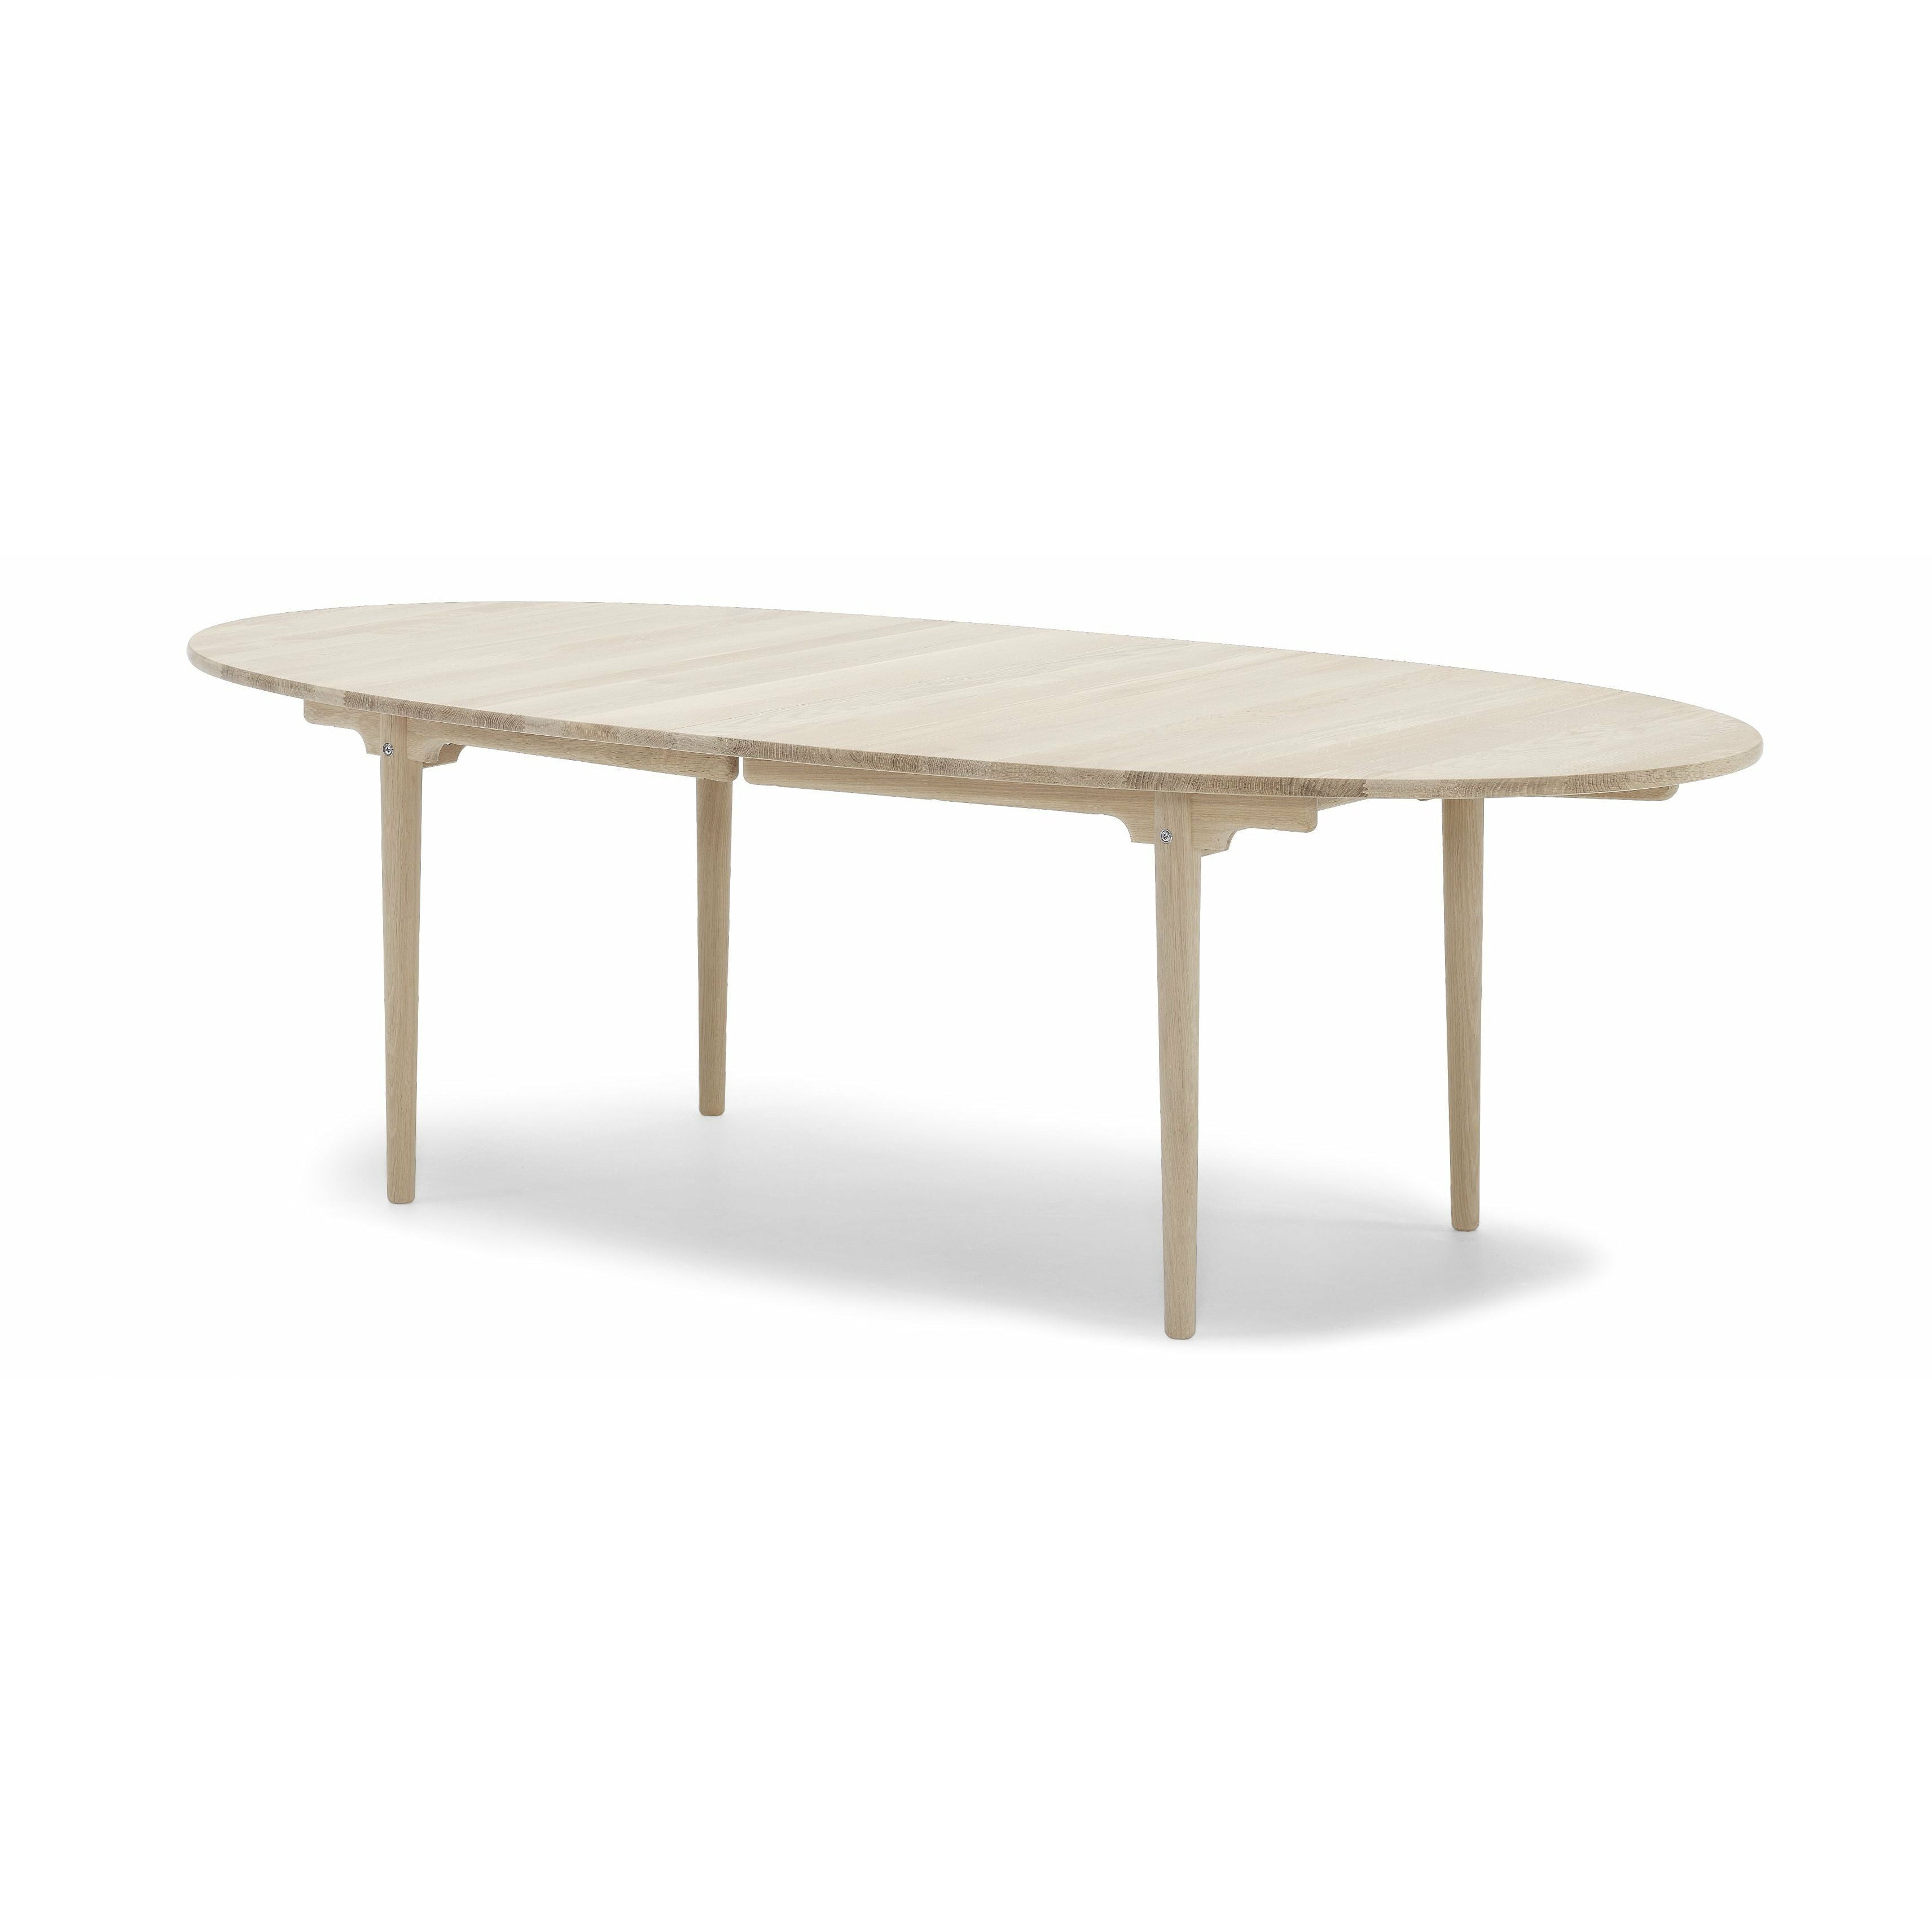 Carl Hansen CH339 matbord med dragning för 4 plattor, ekvål